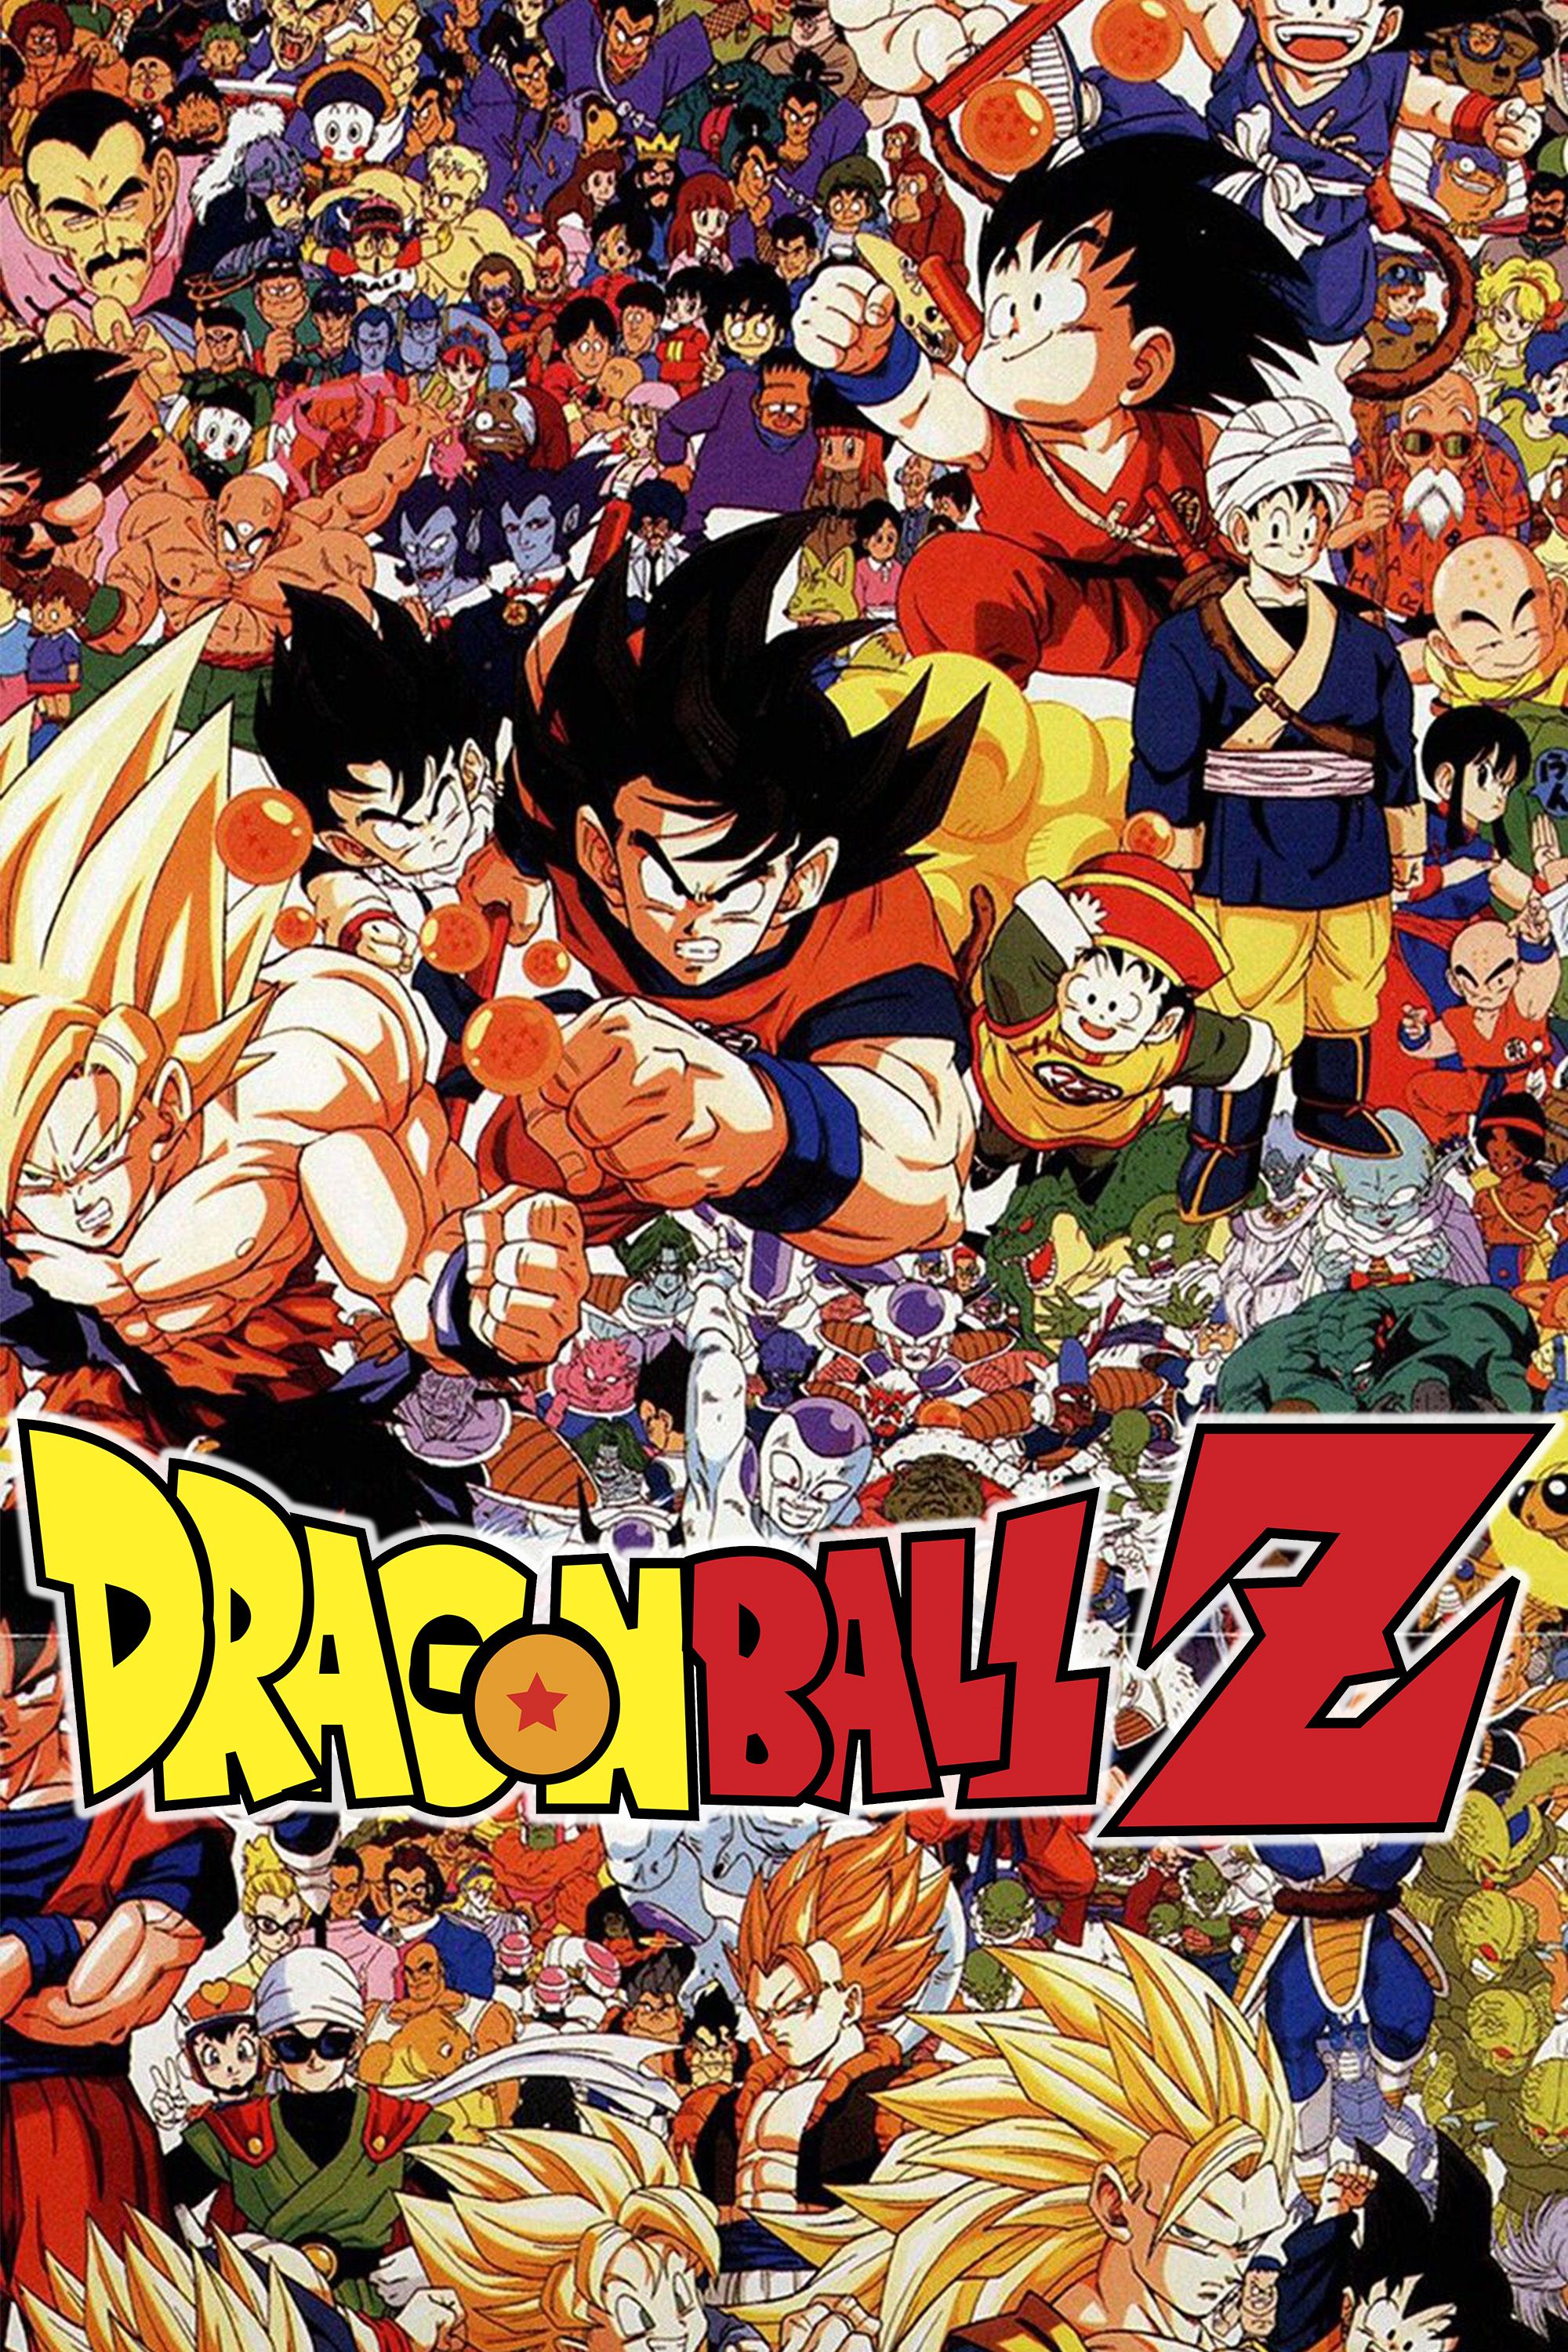 dragon-ball-z-akira-toriyama-dbz-series-franchise-manga-anime-game